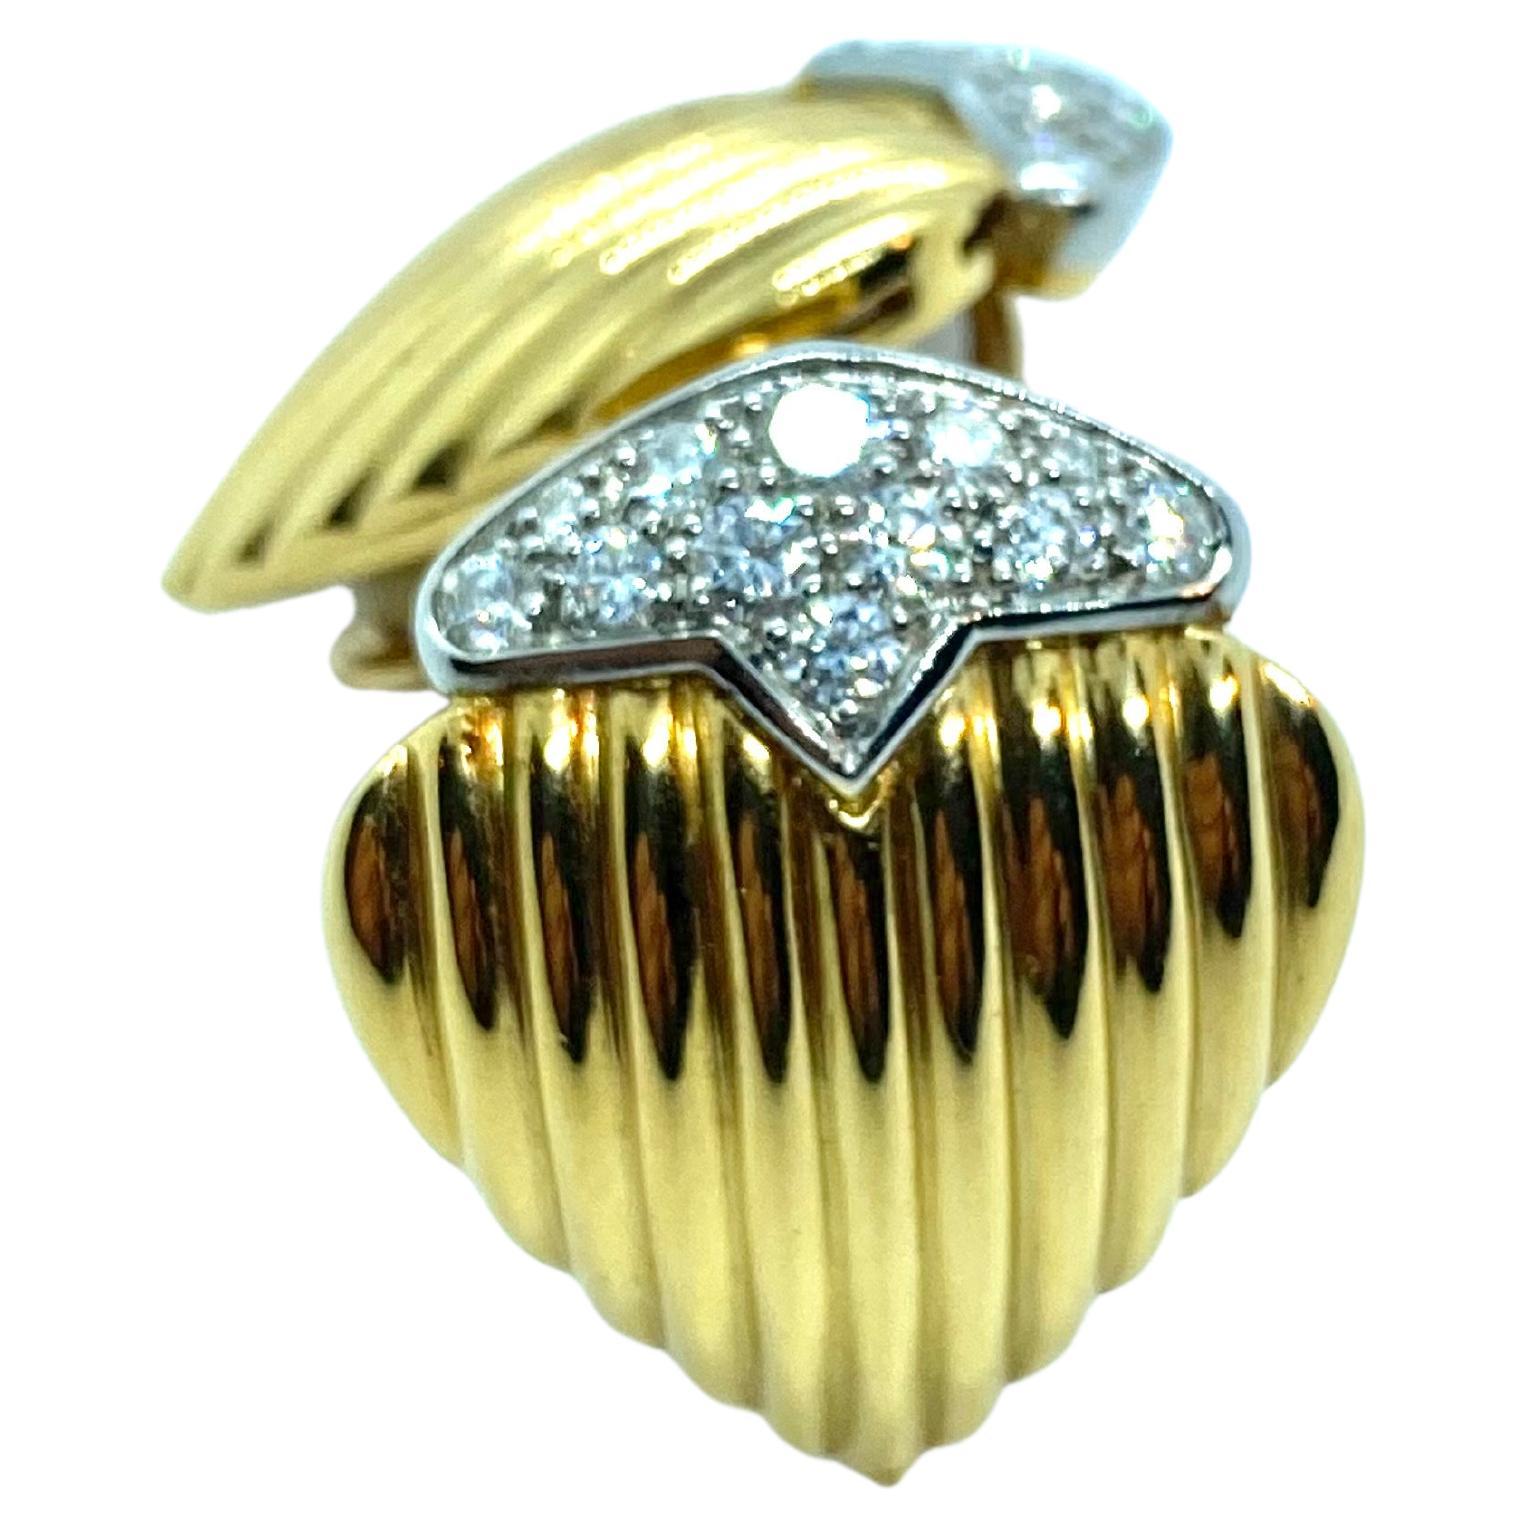 Raffinierte Knopf-Ohrringe in Herzform aus 18 Karat Gelb- und Weißgold.
Sie tragen jeweils natürliche Diamanten im Brillantschliff; geschätztes Gewicht ct. 1.00
Gesamtgewicht der Diamanten ct. 2.00
Bruttogewicht : gr 22,50
Breite 22 mm.
Höhe 27